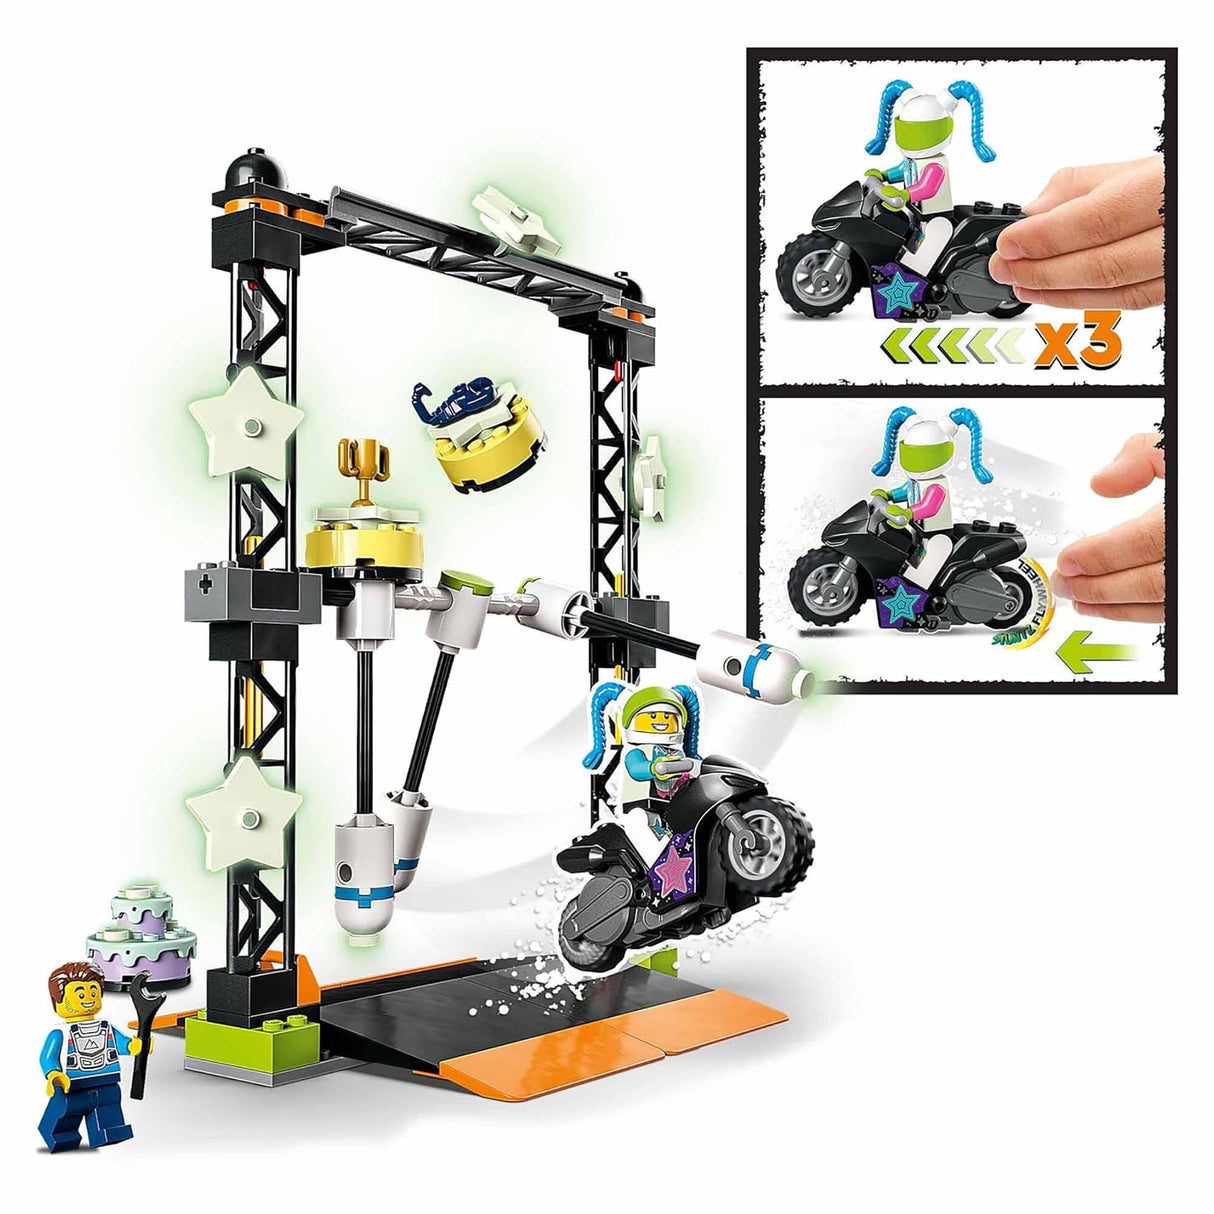 LEGO 60341 City Stuntz The Knockdown Stunt Challenge (117 pieces)